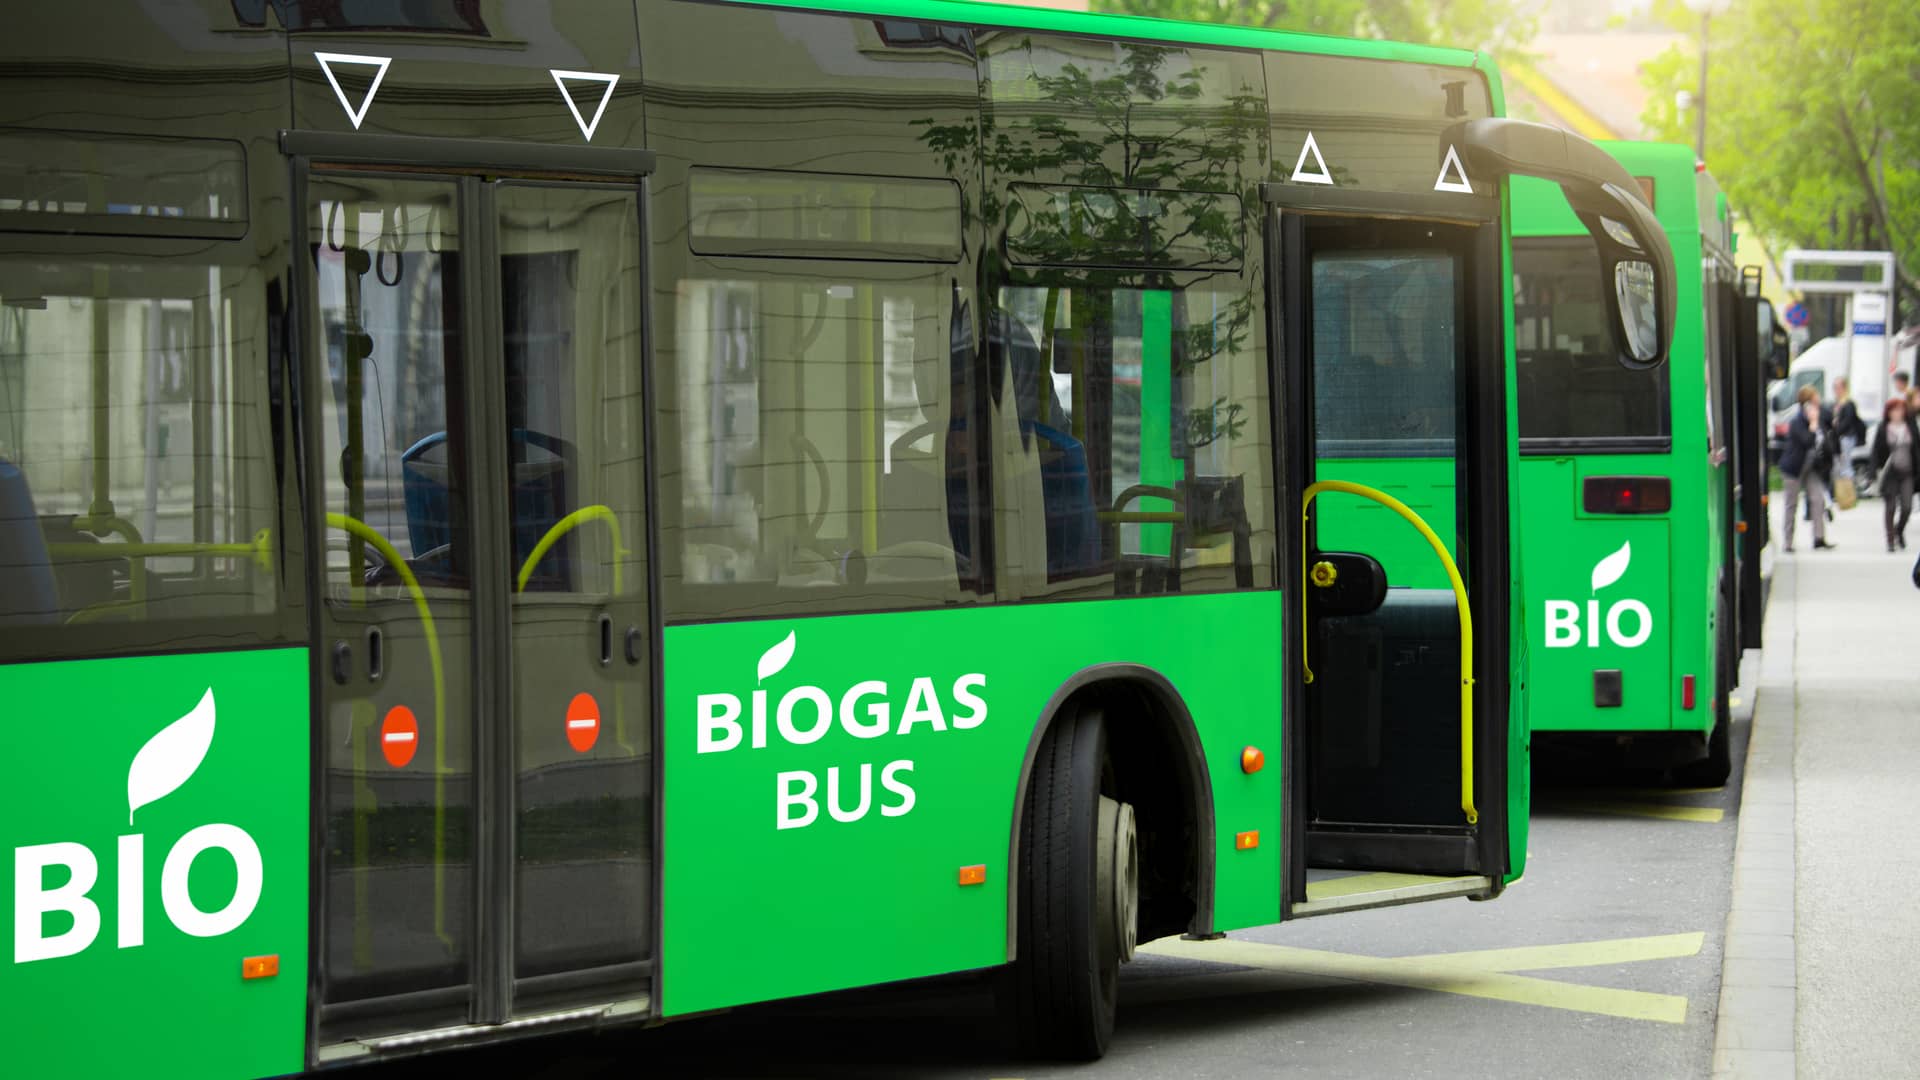 Autobuses verdes que utilizan combustible realizado a partir de biogás, su uso como carburante es una de sus ventajas